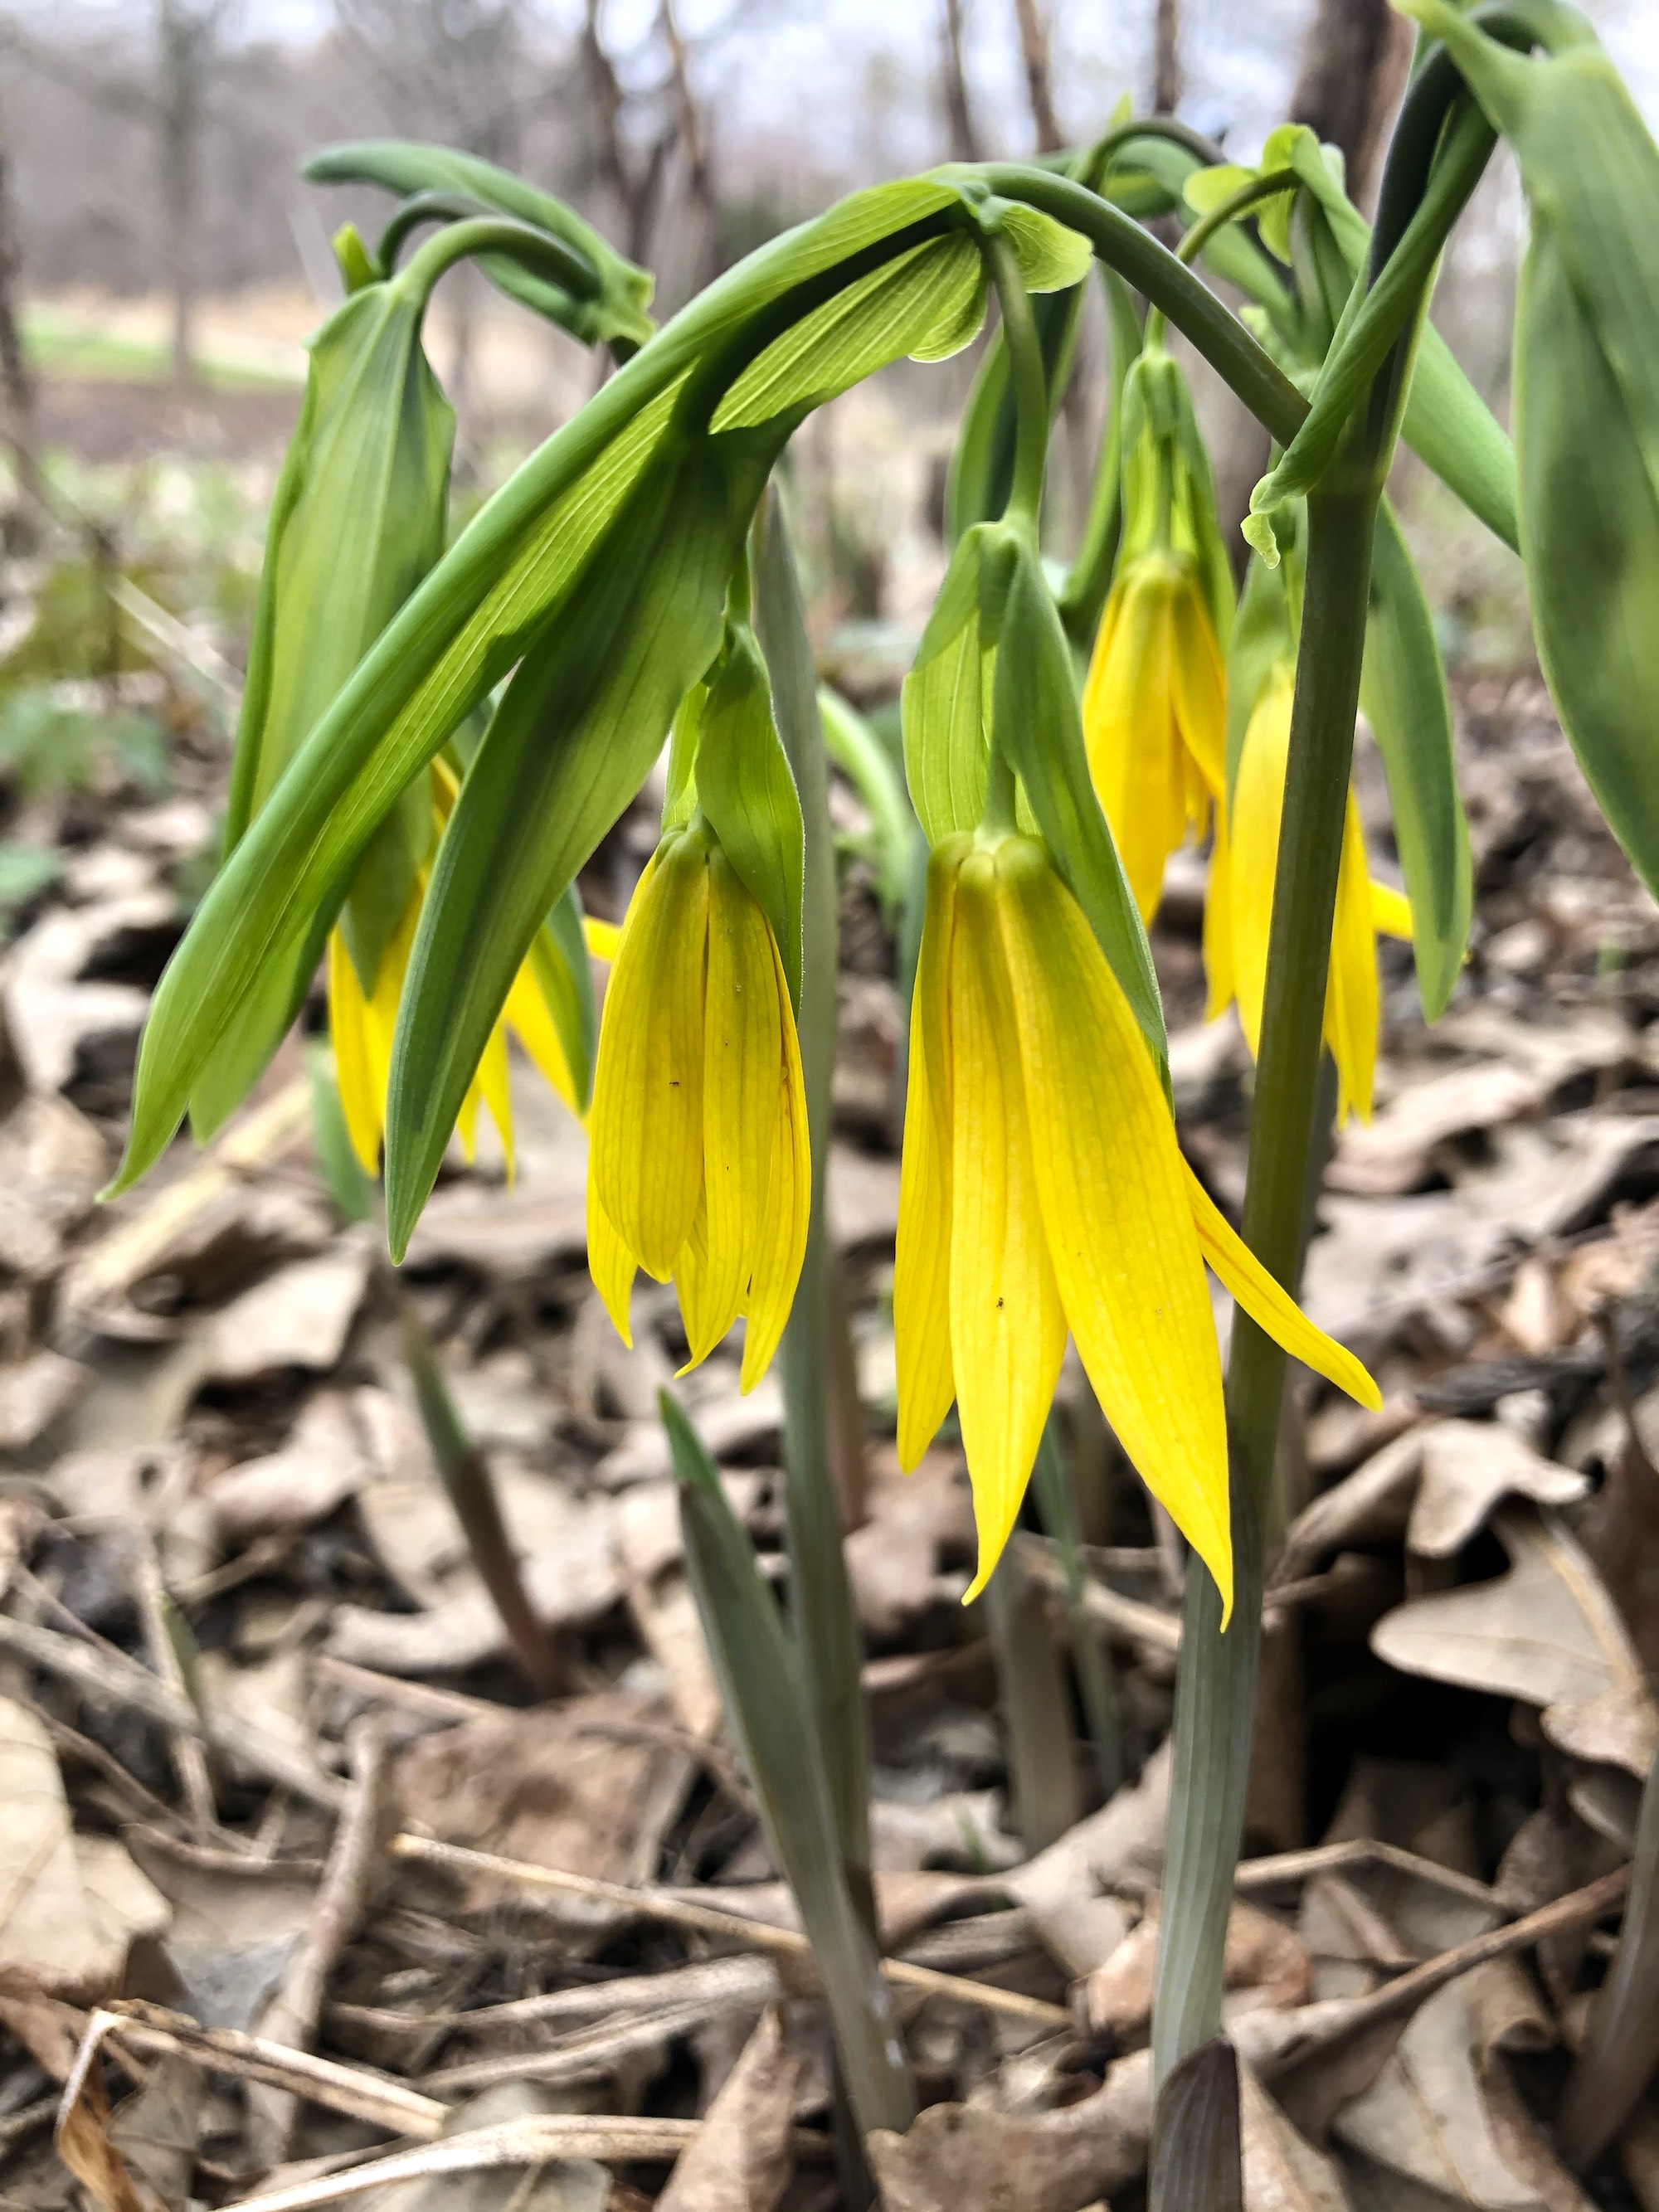 Bellwort in UW Arboretum Native Gardens in Madison, Wisconsin on April 14, 2021.